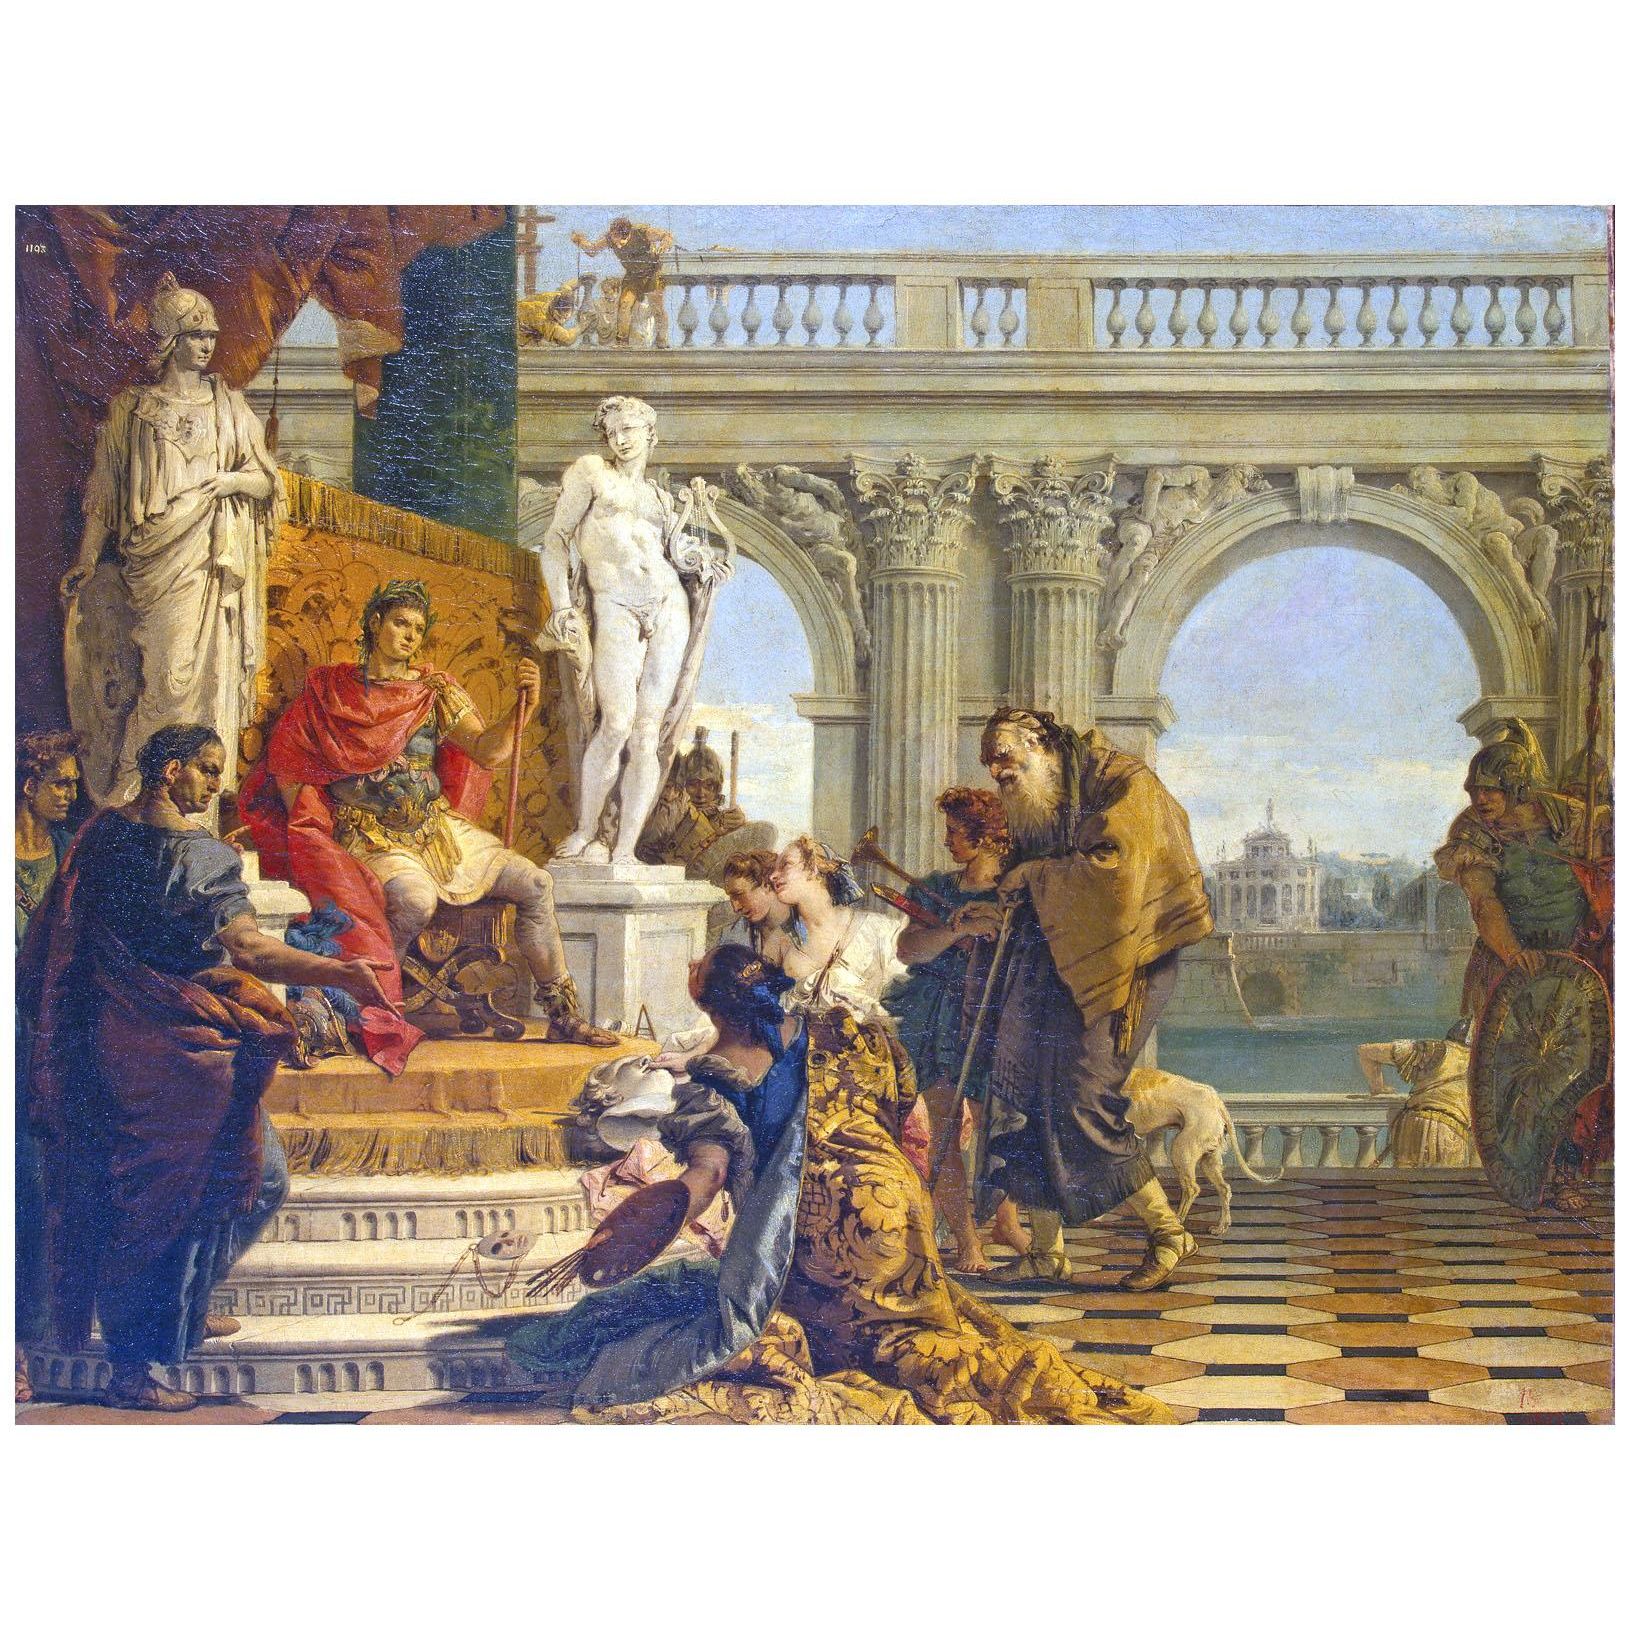 Giovanni Battista Tiepolo. Mecenate presenta le arti liberali. 1743. Hermitage